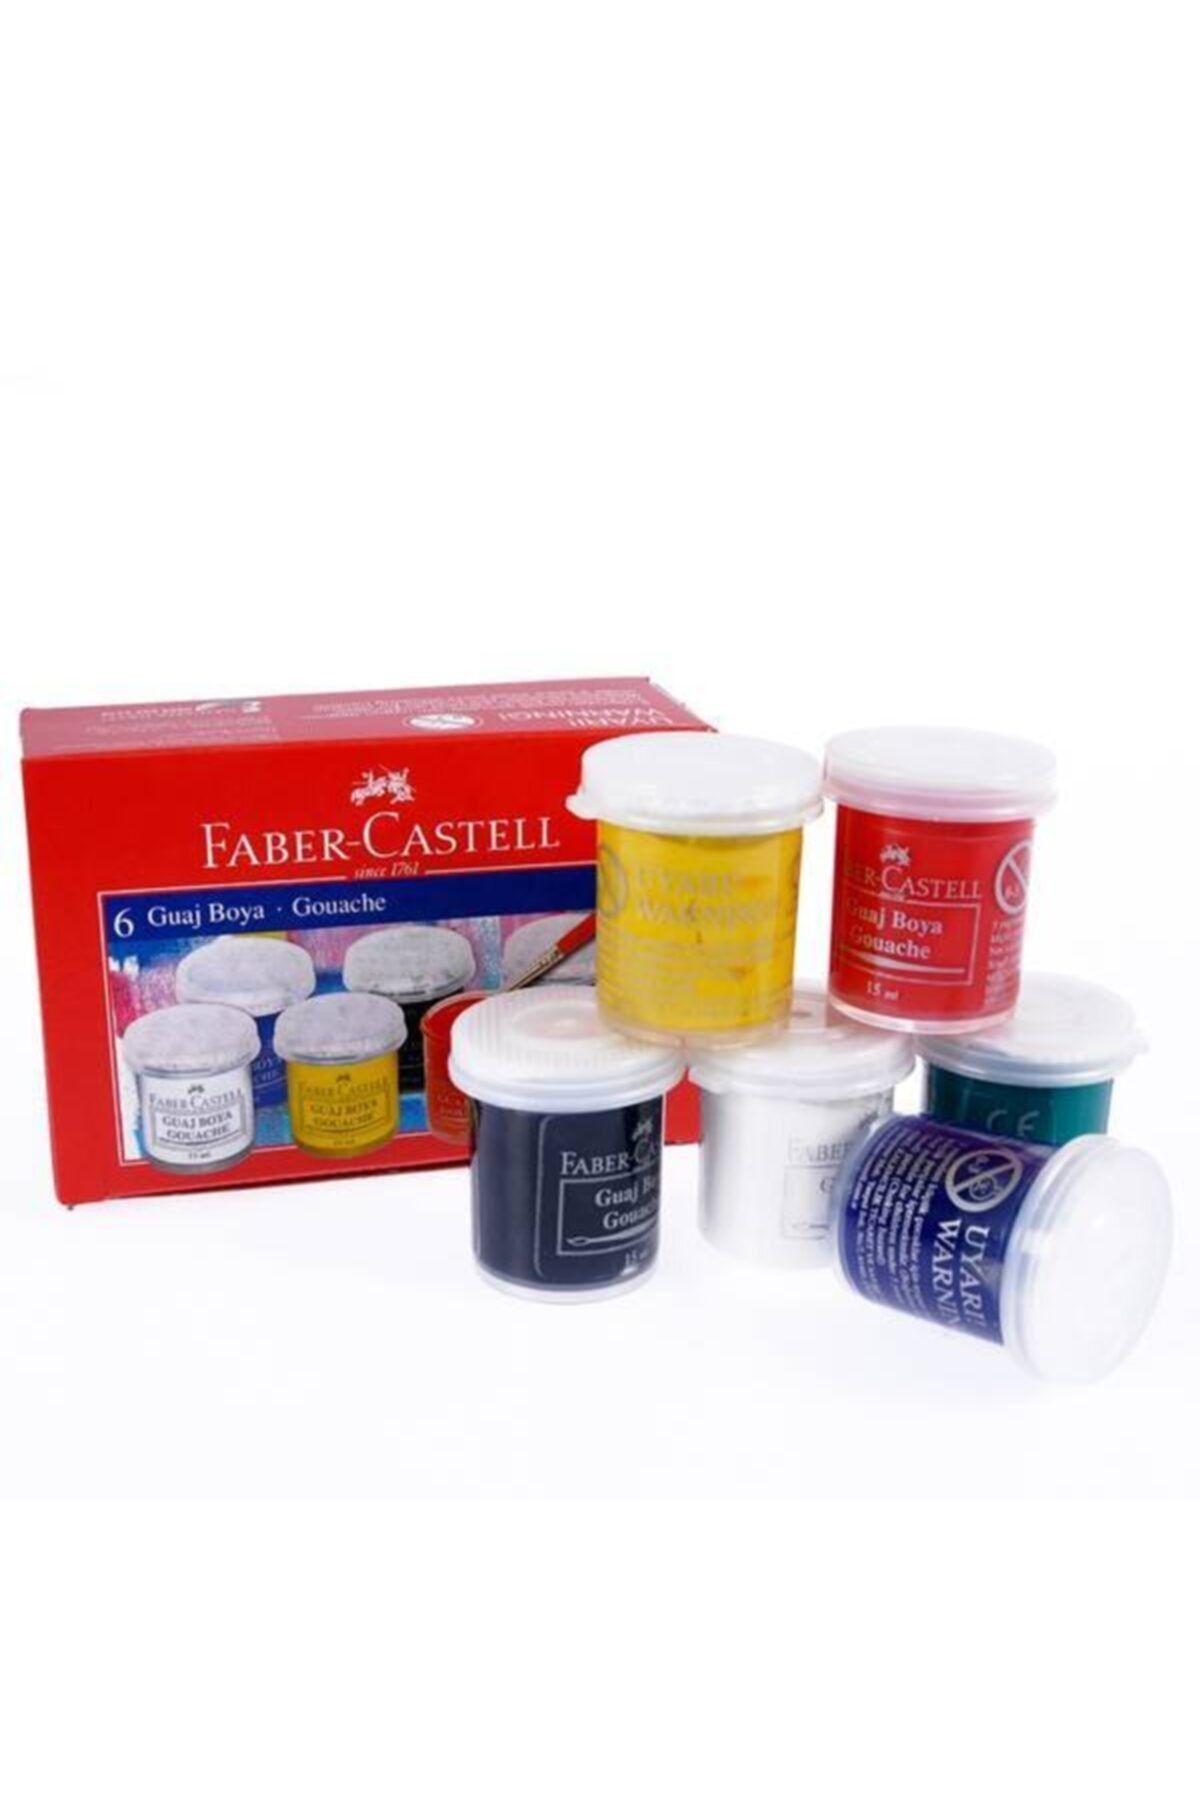 Faber Castell 6 Lı Guaj Boya Şişe